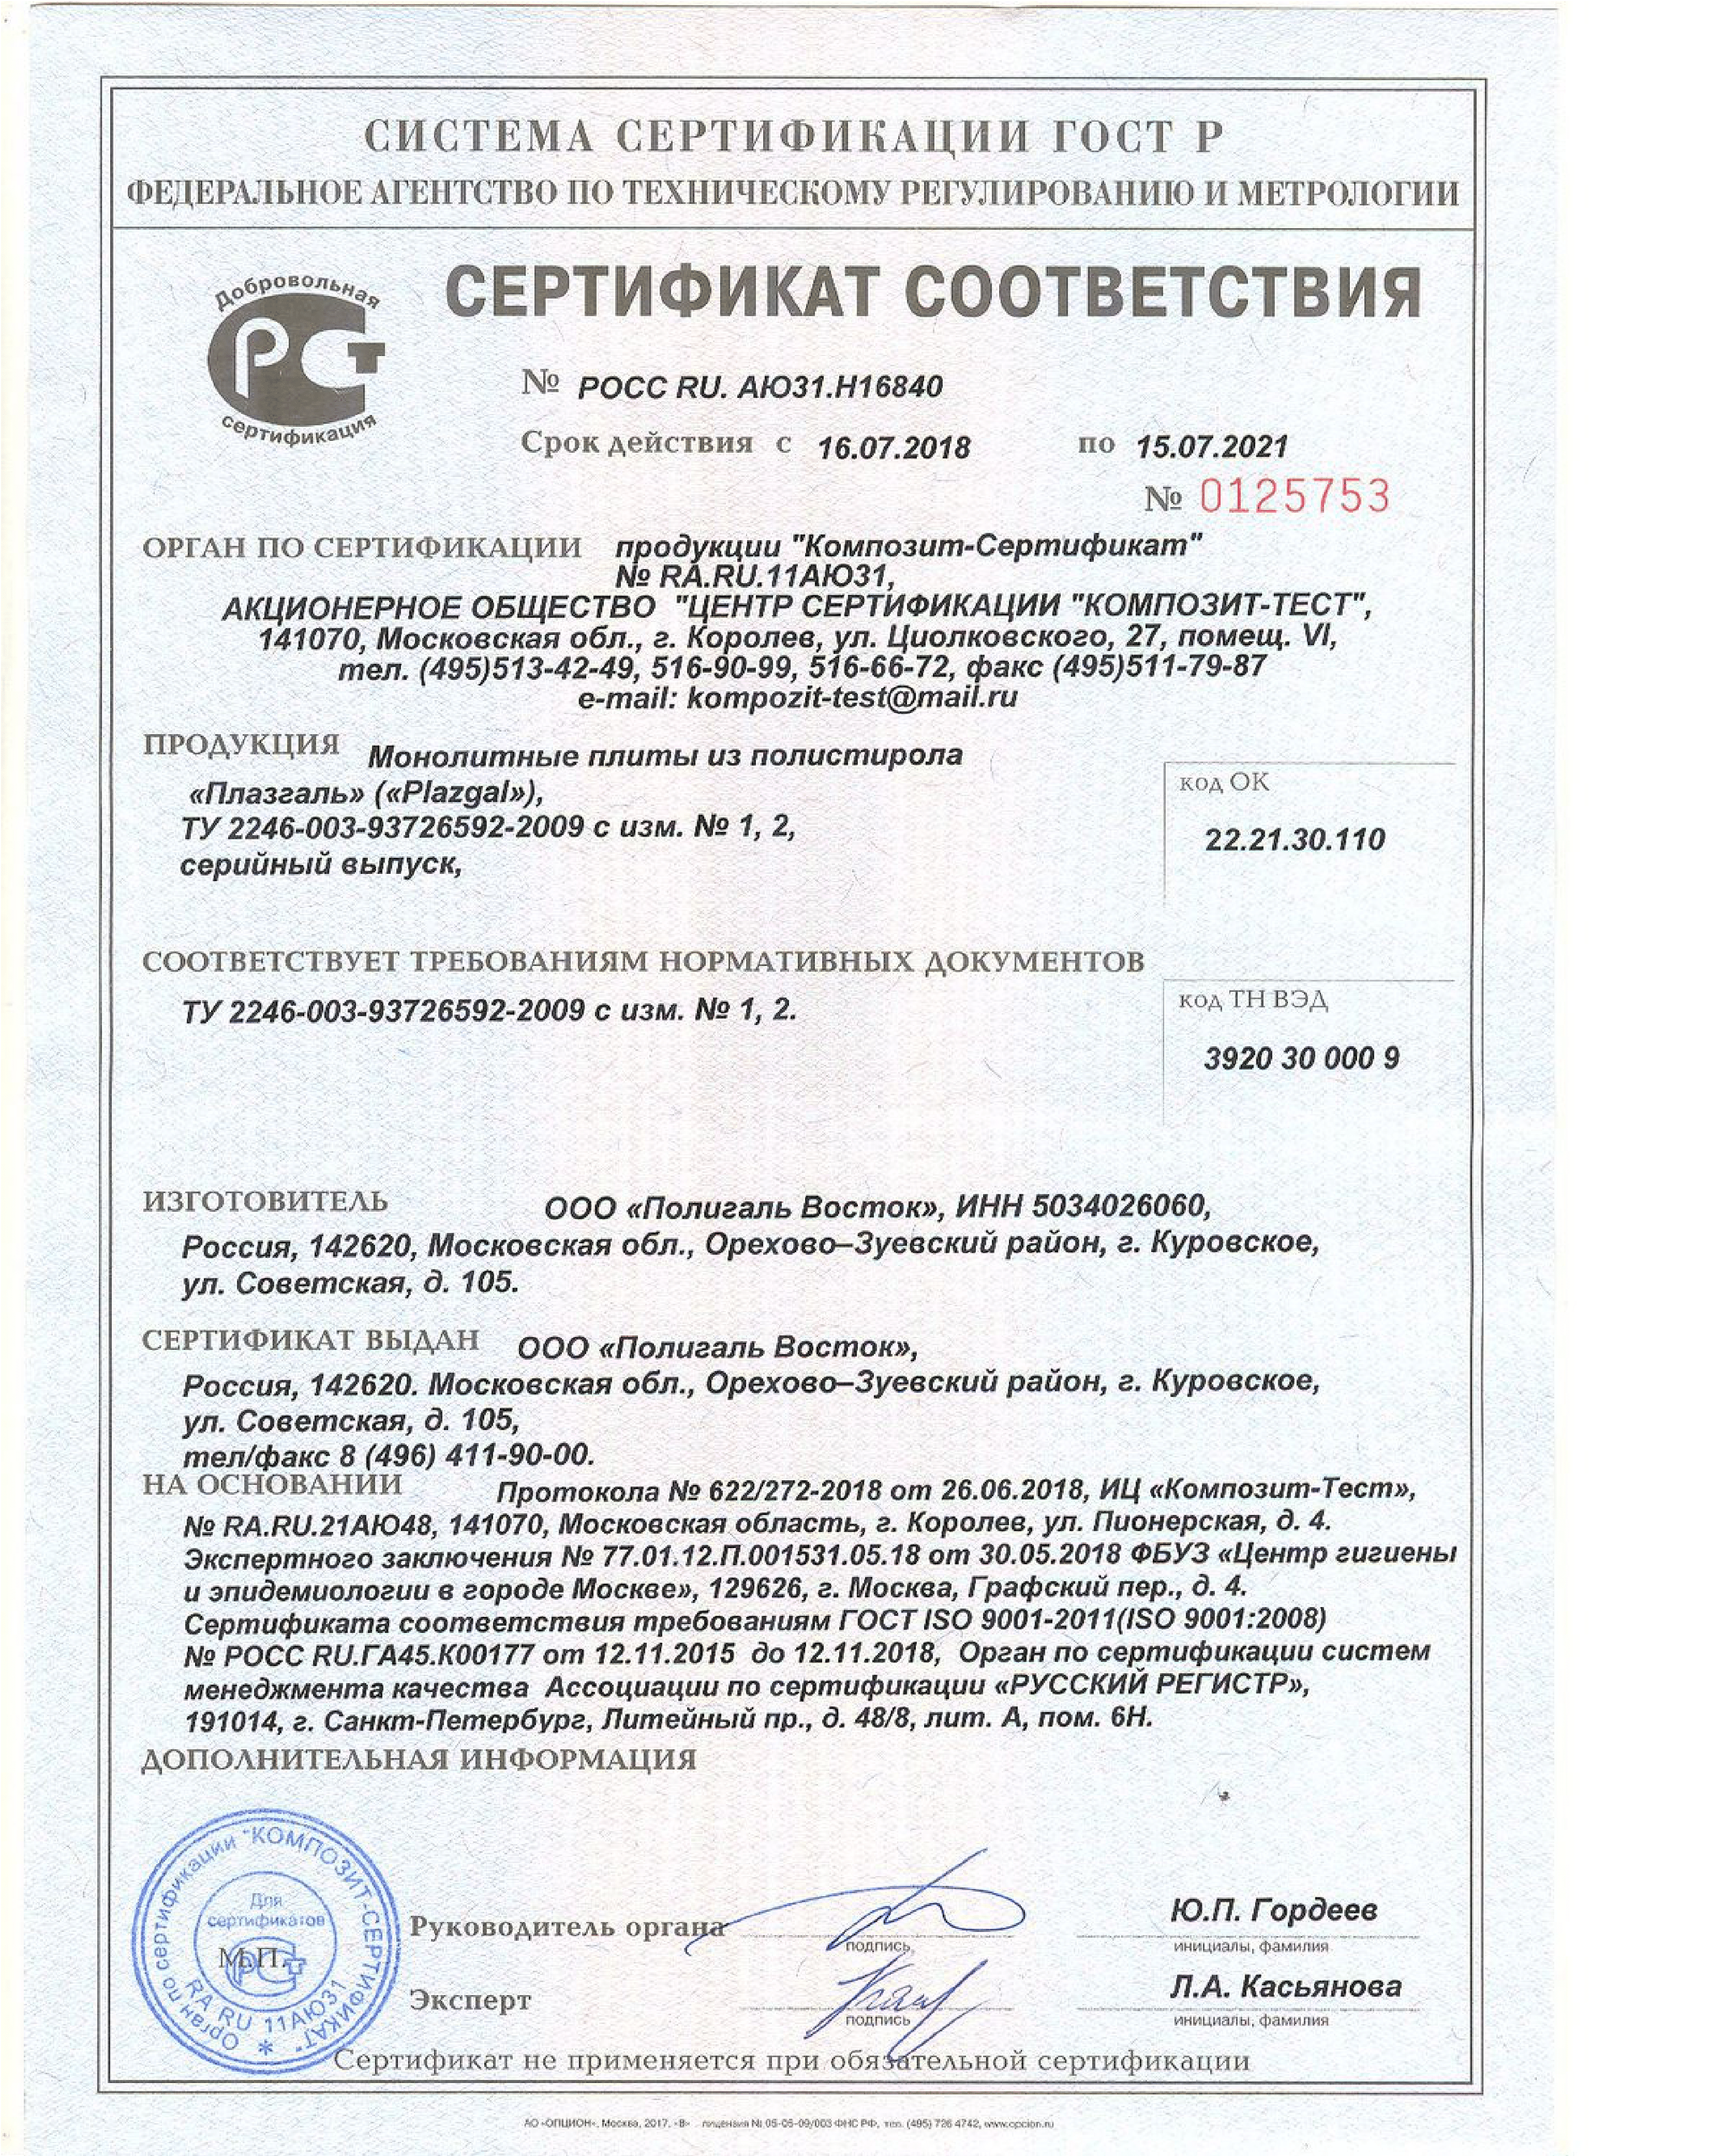 Полигаль полистирол сертификат соответствия-1